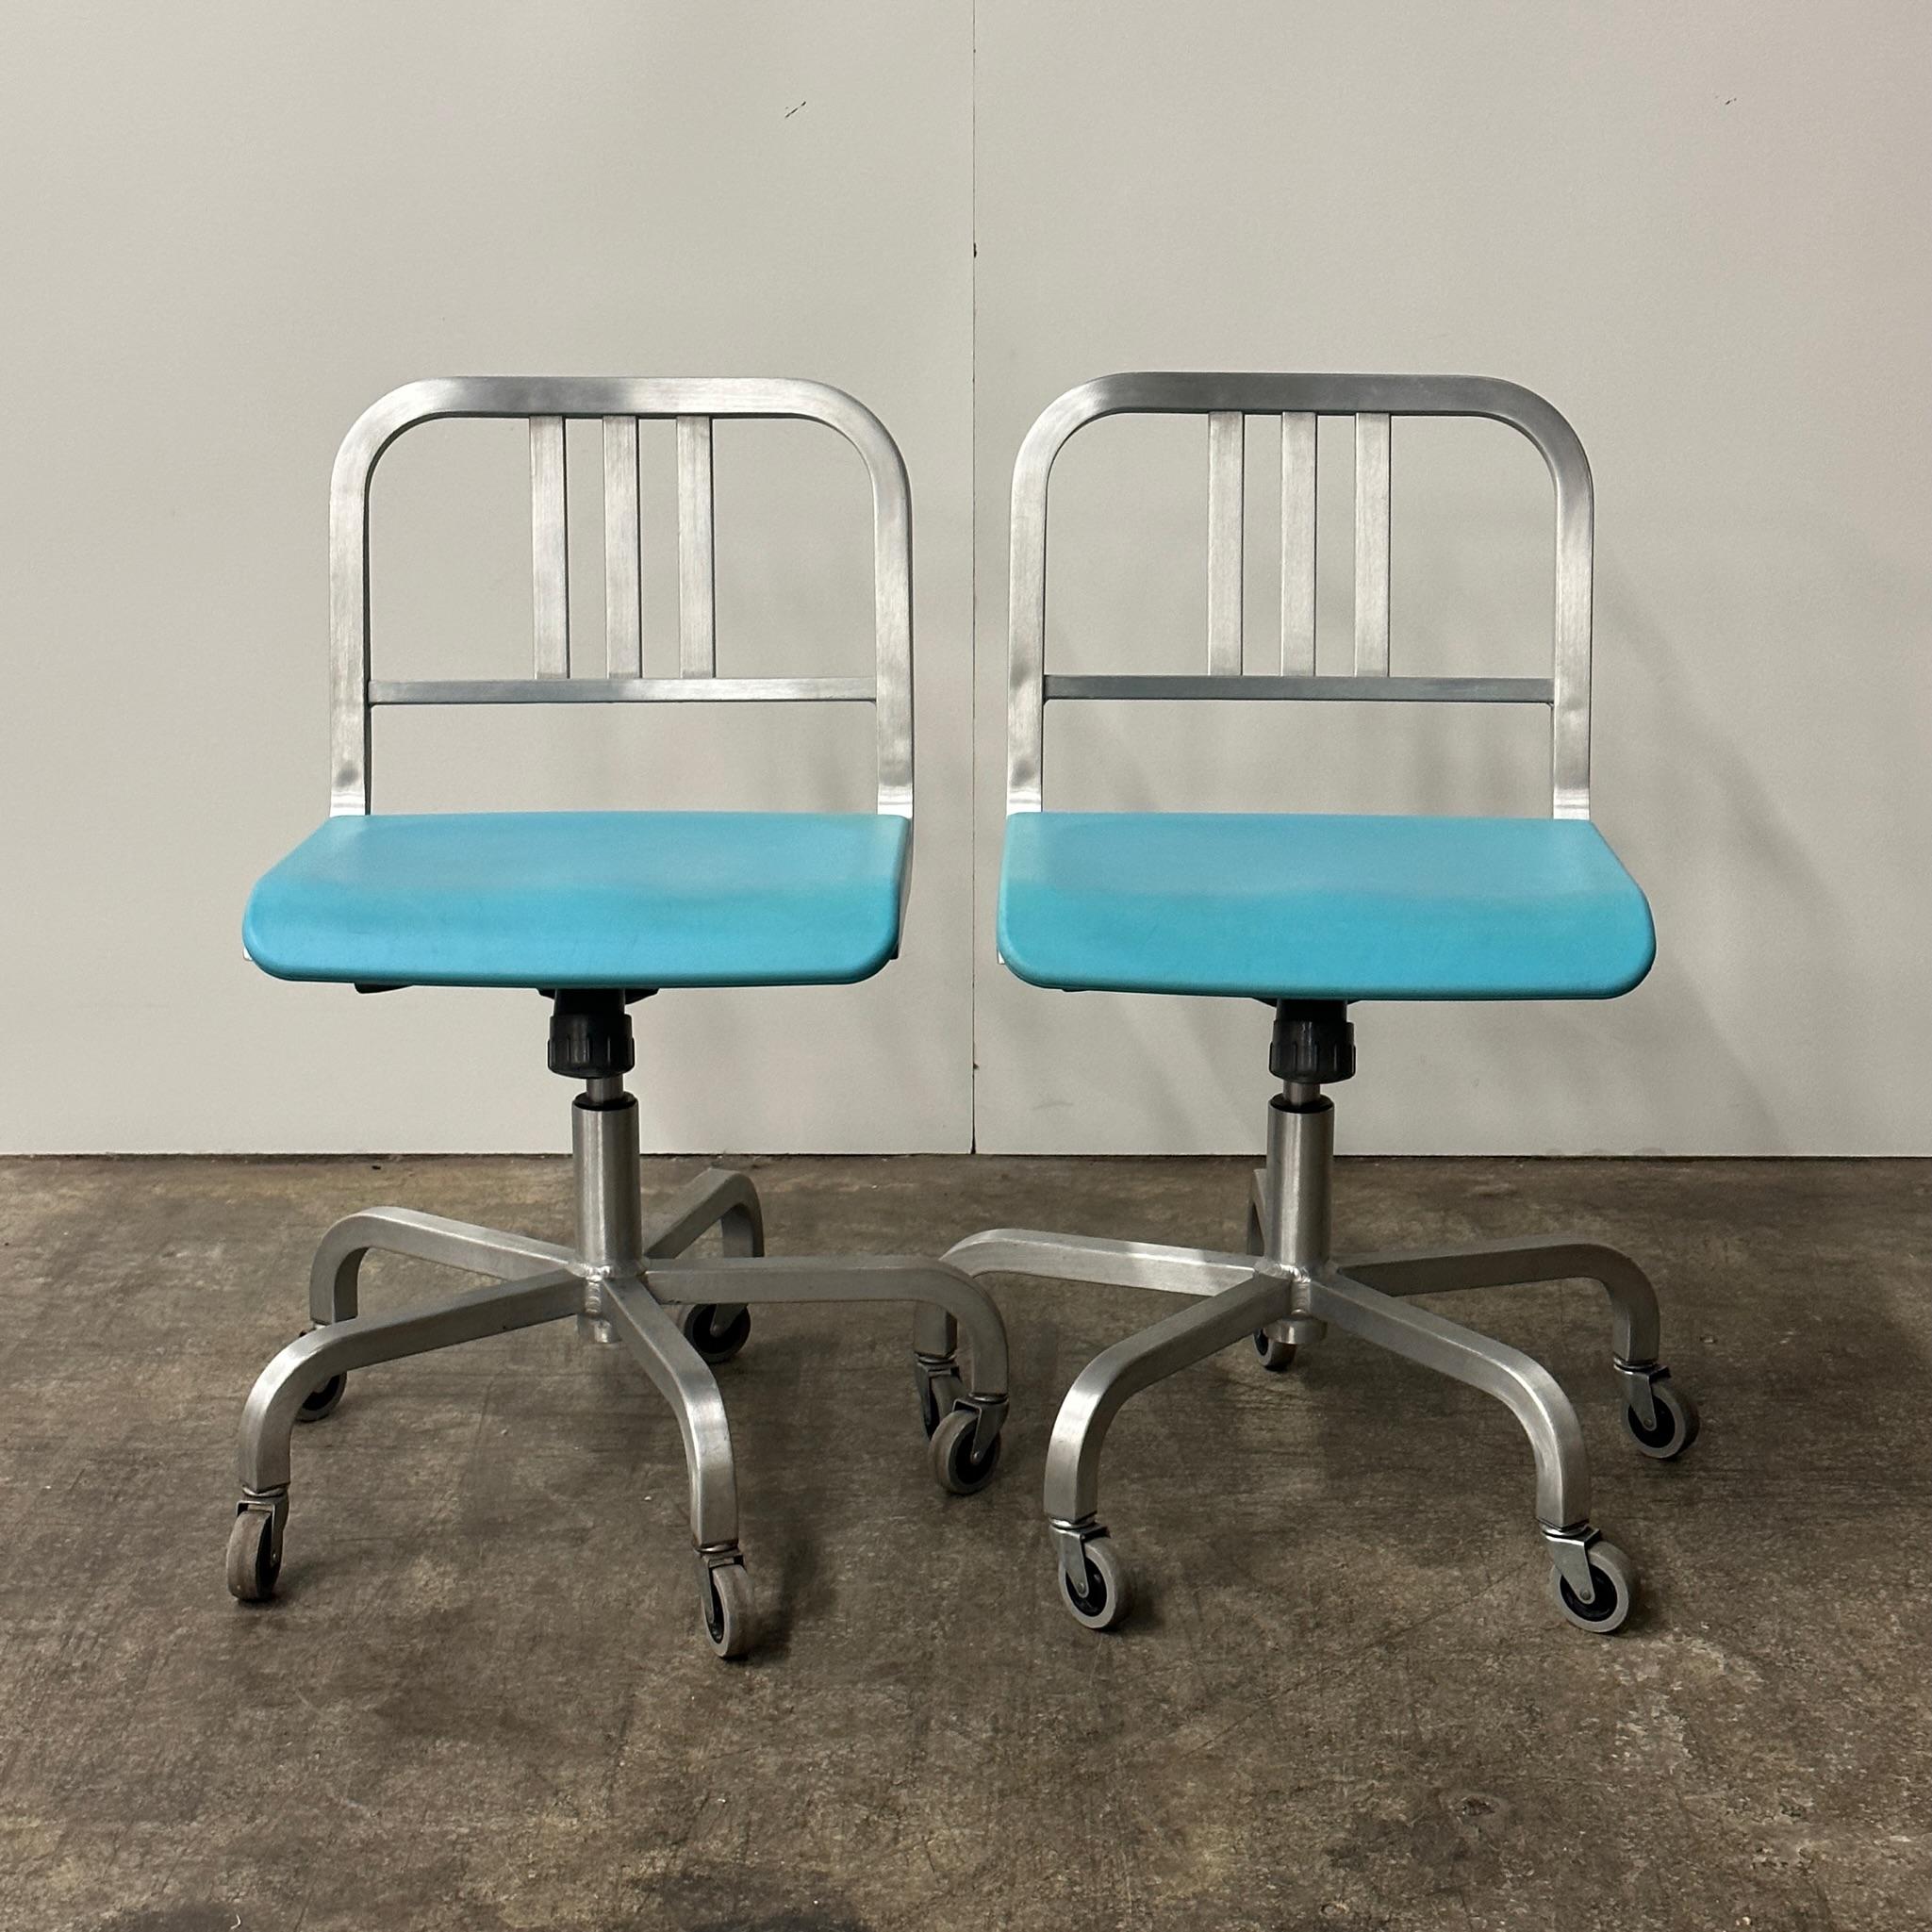 Aluminiumkonstruktion mit blauem Sitzpad.

Der Preis gilt für das Set. Nehmen Sie Kontakt mit uns auf, wenn Sie einen einzelnen Artikel kaufen möchten.